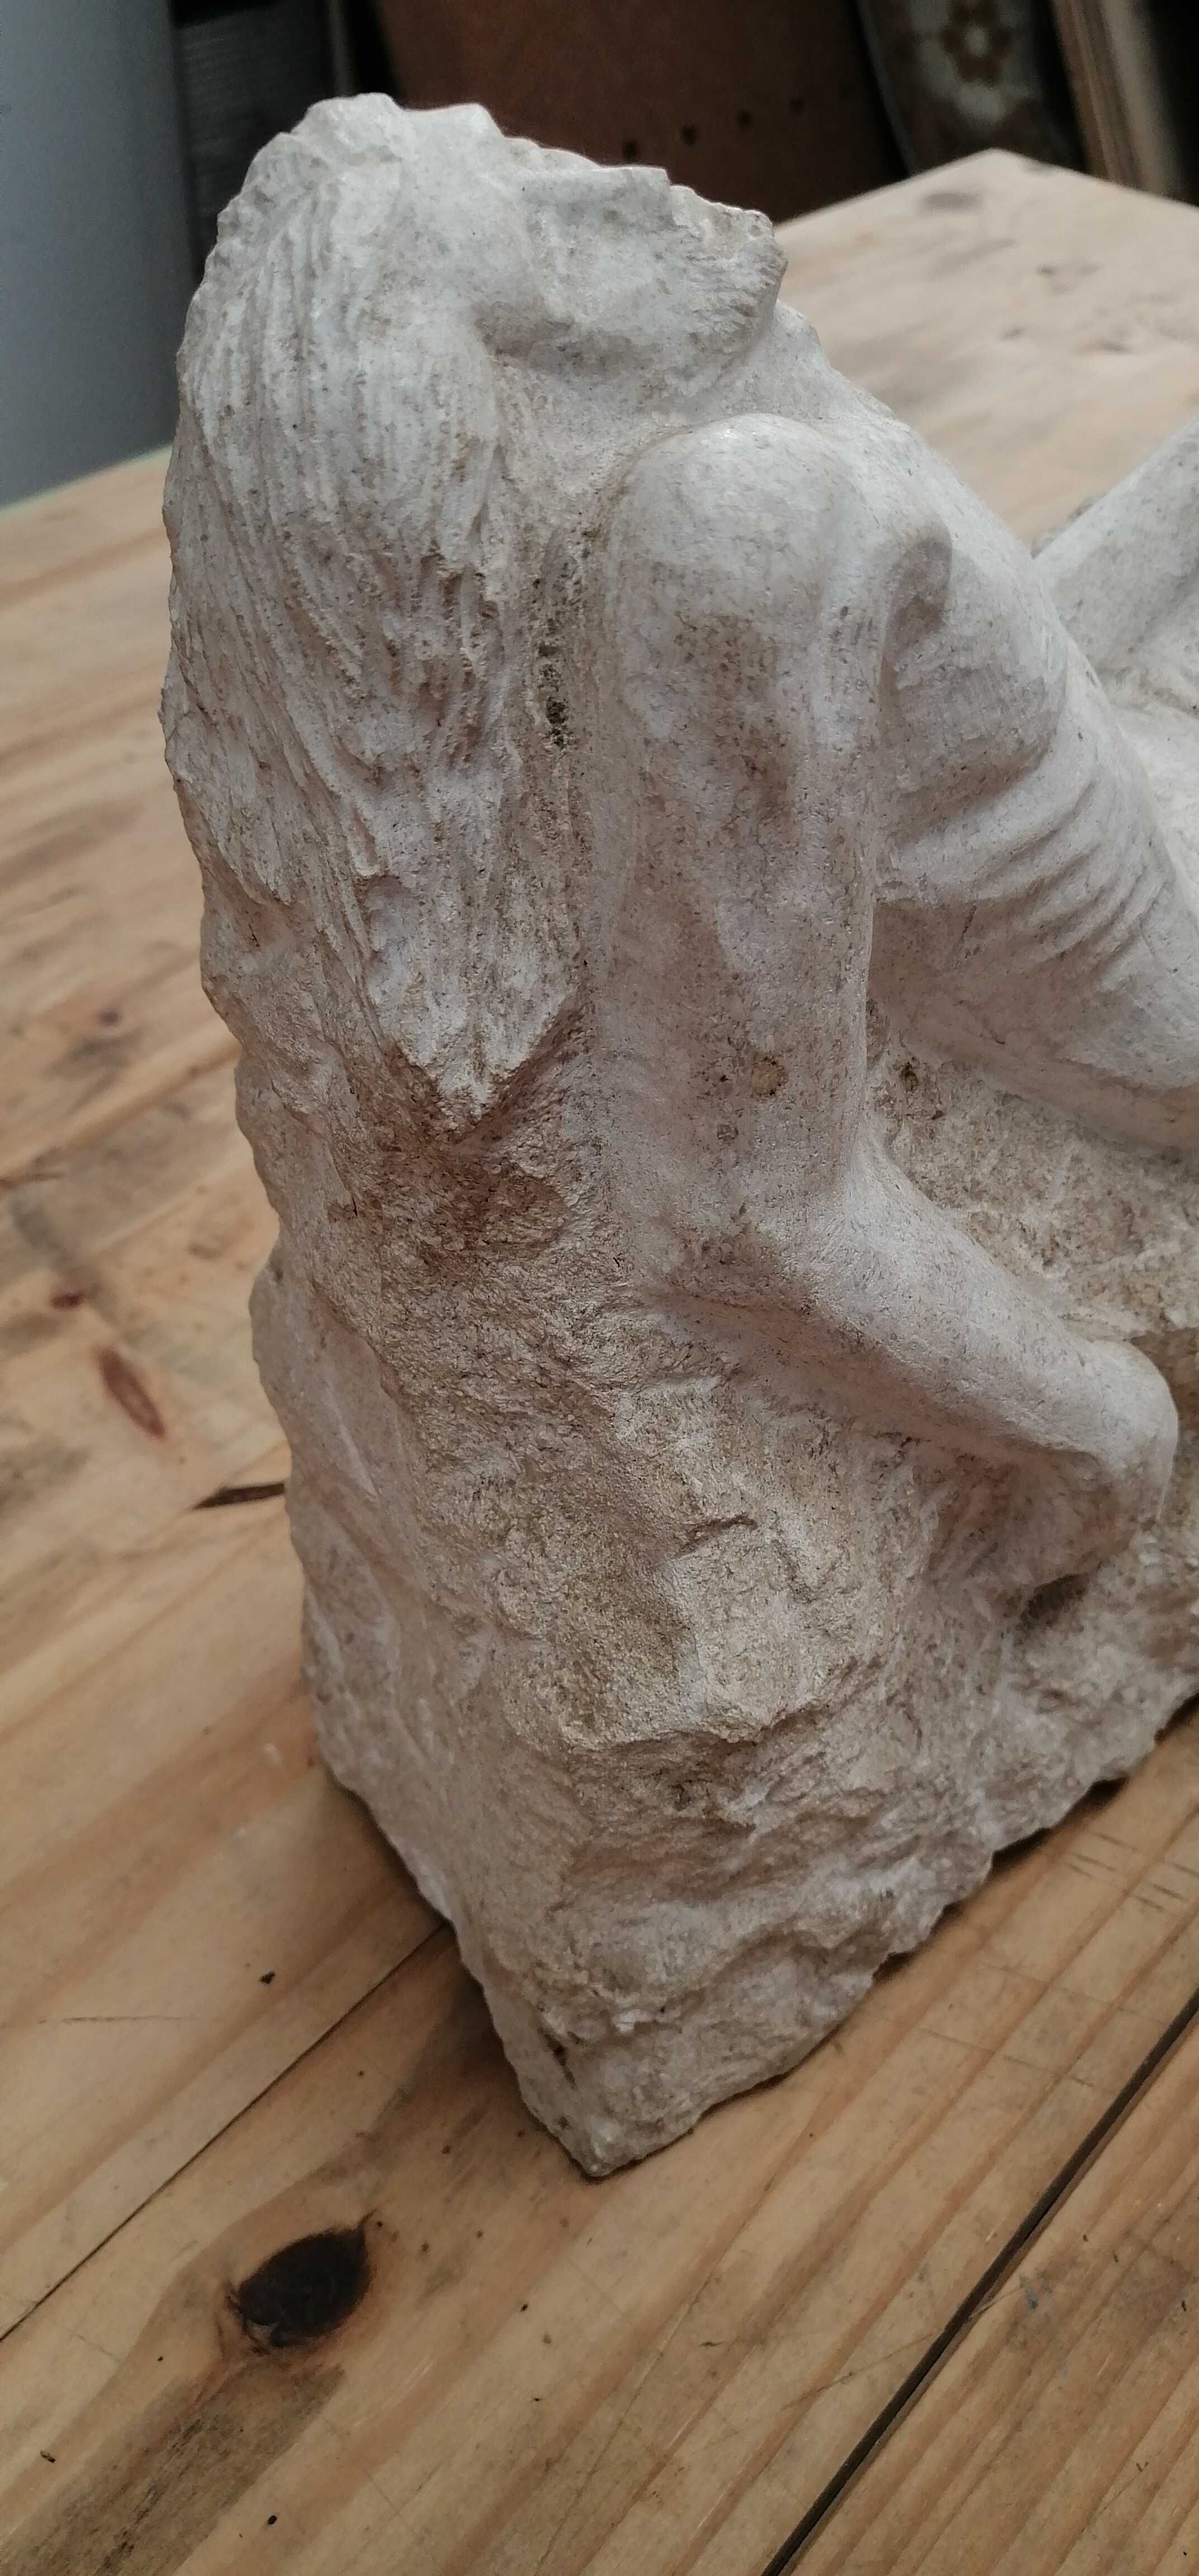 Escultura em Pedra de Jesus Cristo 30x30cm com 15kg autor desconhecido